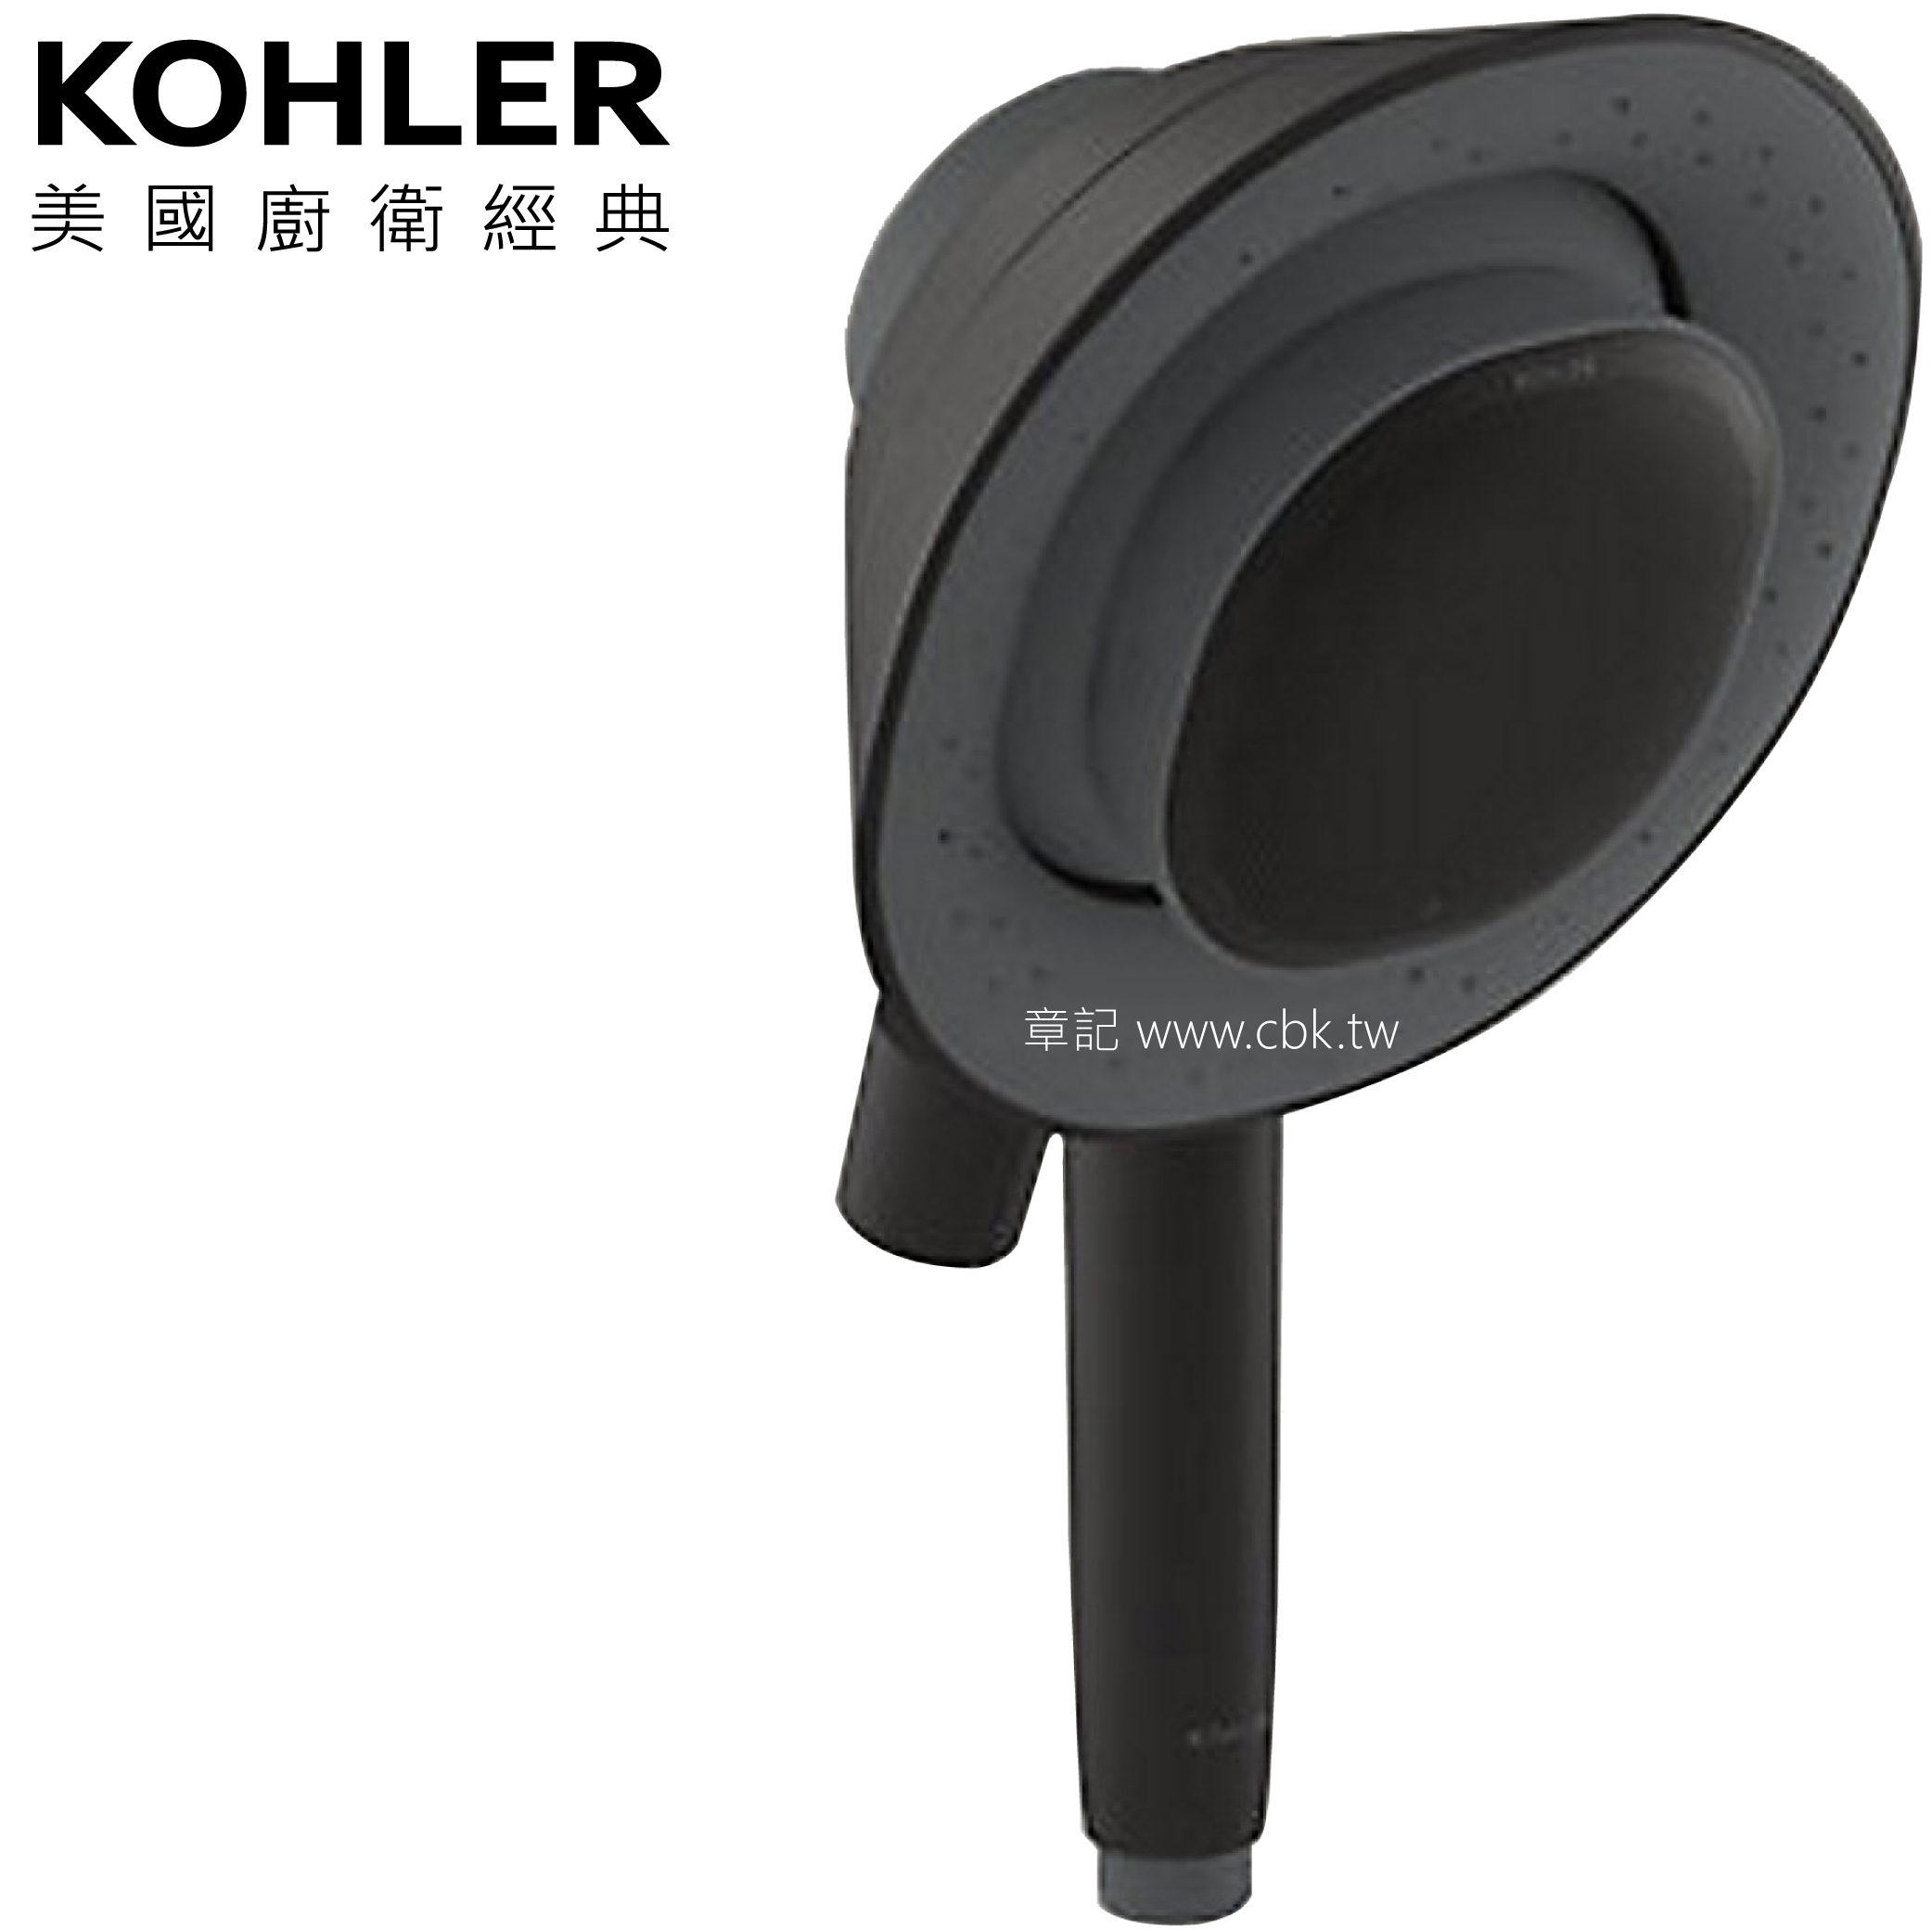 KOHLER Moxie 2.0 藍芽魔音手持花灑(消光黑) K-R28241T-NKE-BL  |SPA淋浴設備|蓮蓬頭、滑桿